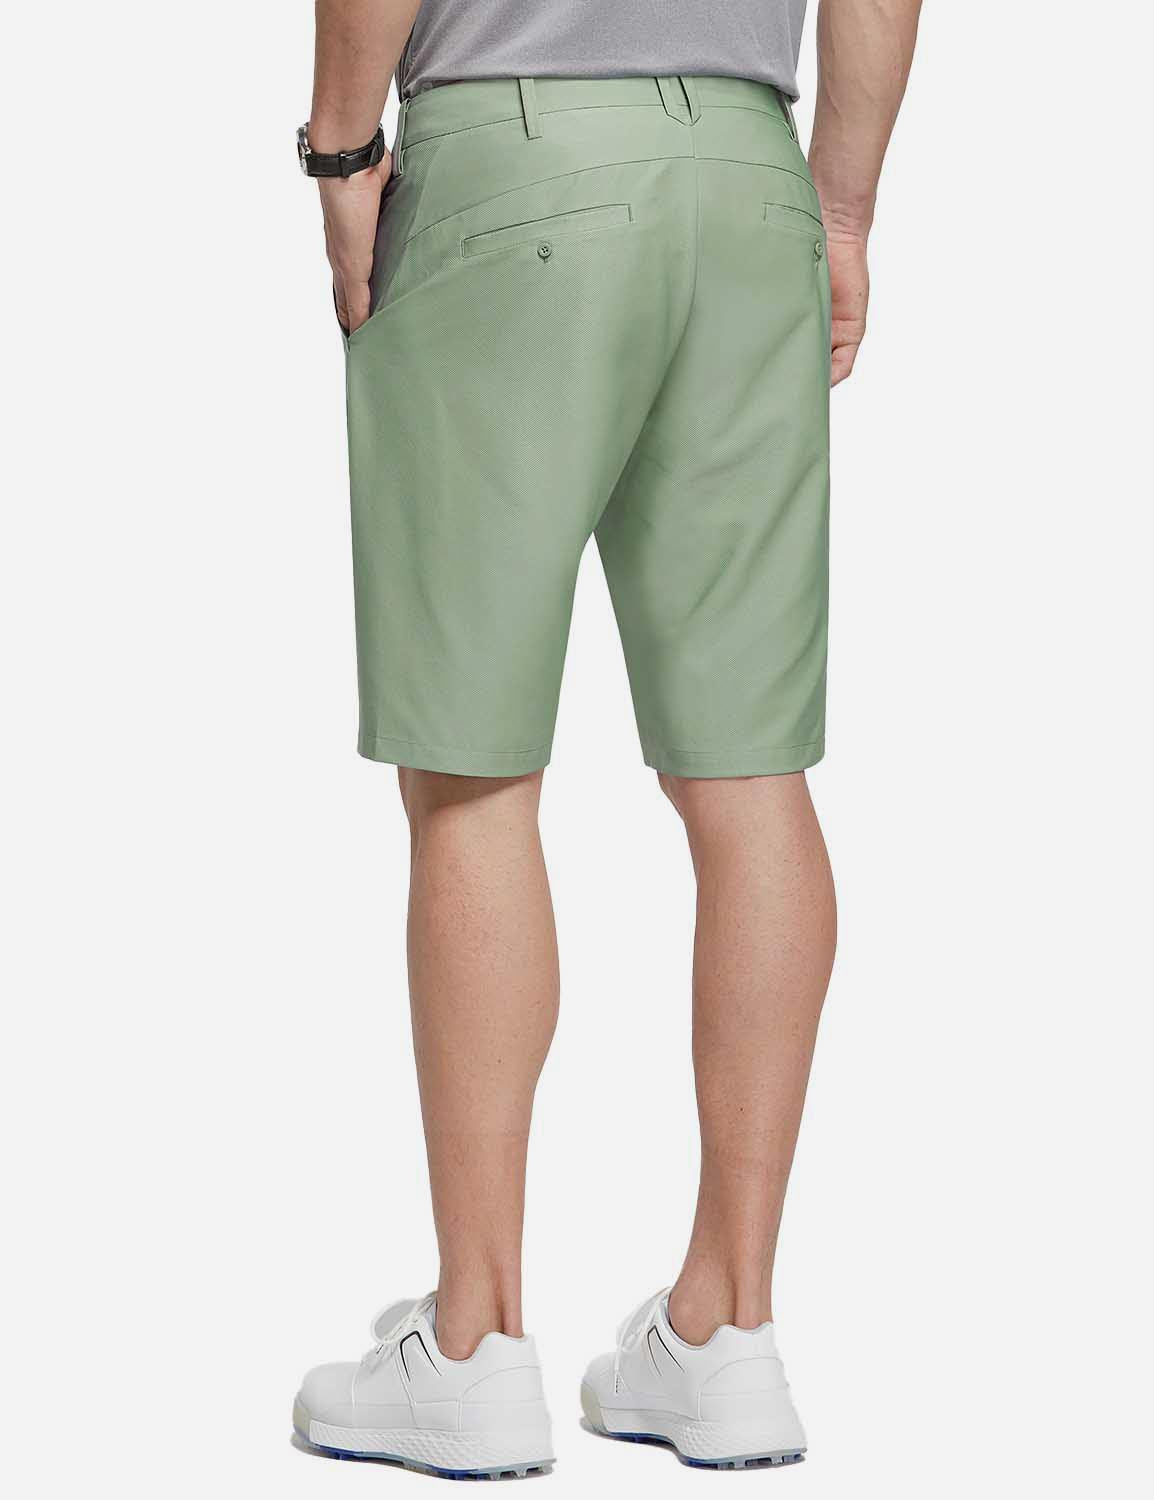 Baleaf Men's 10' UPF 50+ Lightweight Golf Shorts w Zipper Pockets cga005 Green Back